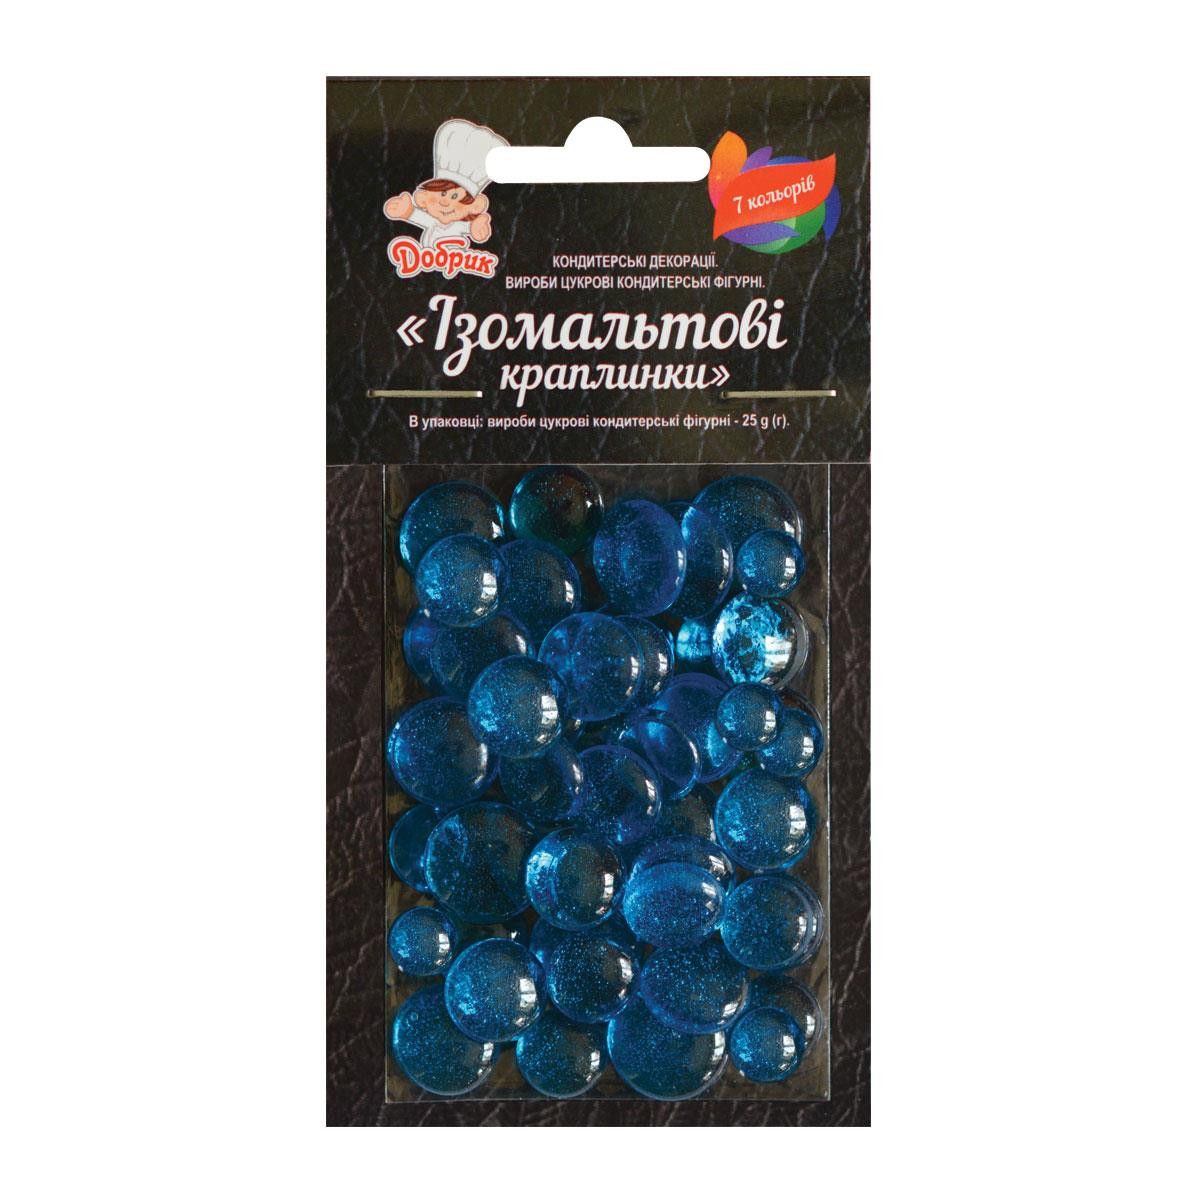 ⋗ Изомальтовые капли синие купить в Украине ➛ CakeShop.com.ua, фото